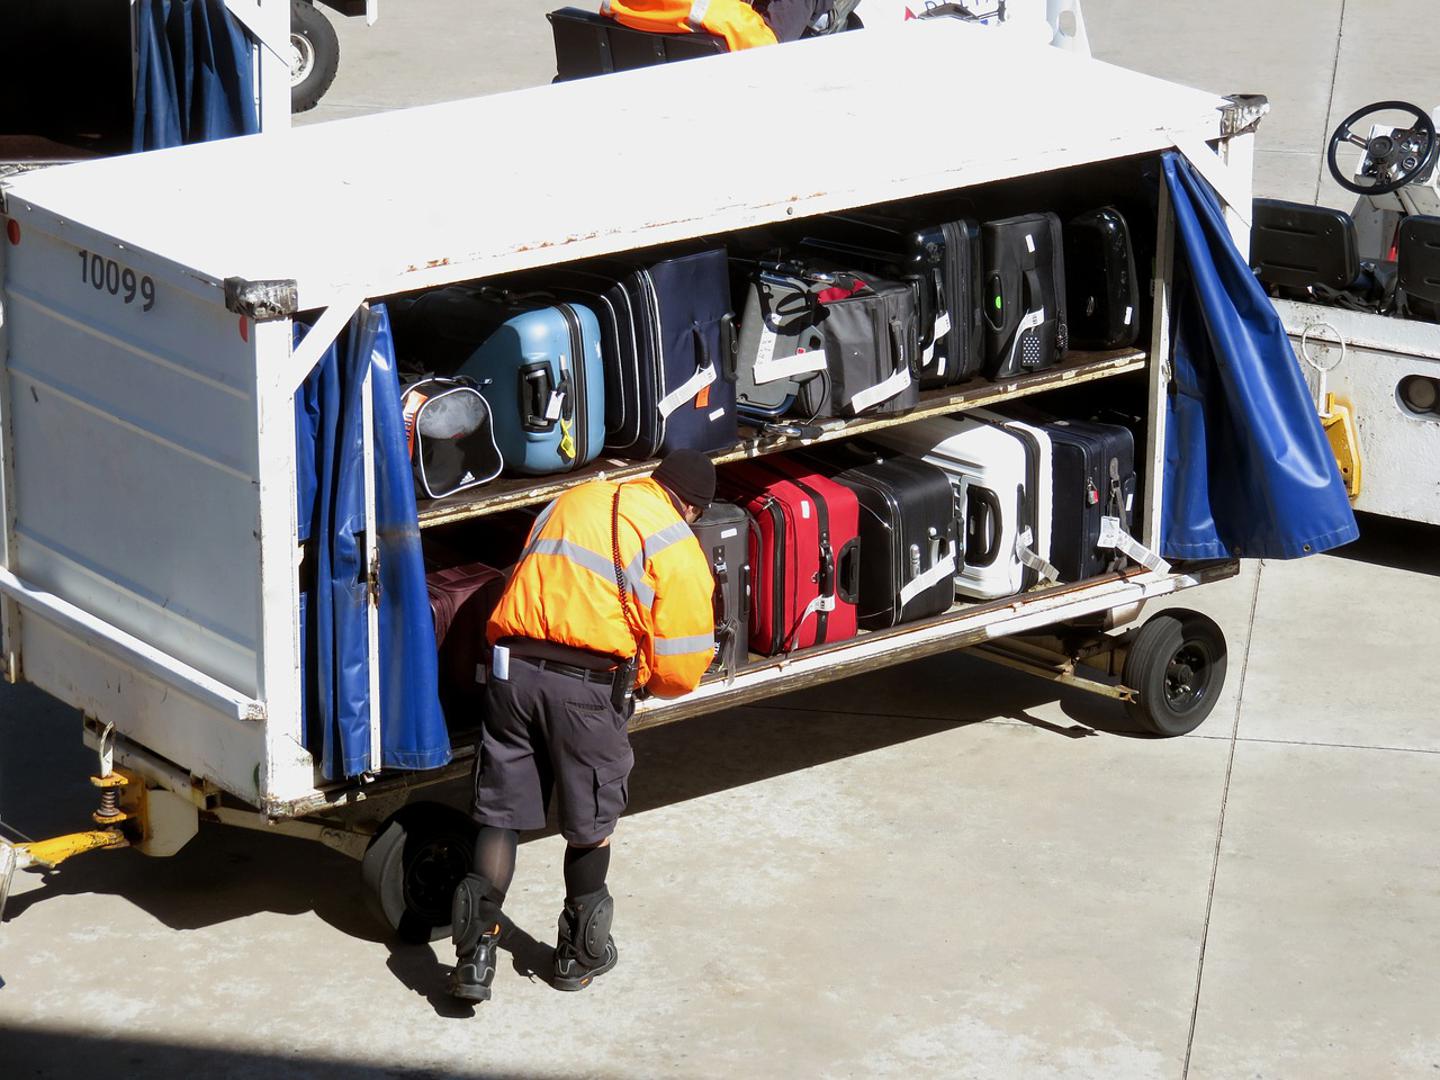 5. Naljepnice poput "lomljivo" i "ova strana gore" radnicima koji slažu prtljagu u teretni prostor aviona ne znače ništa. Za svaki let kroz njihove ruke prolaze stotine kofera koje moraju posložiti kako god stanu, bez obzira na zamolbe.